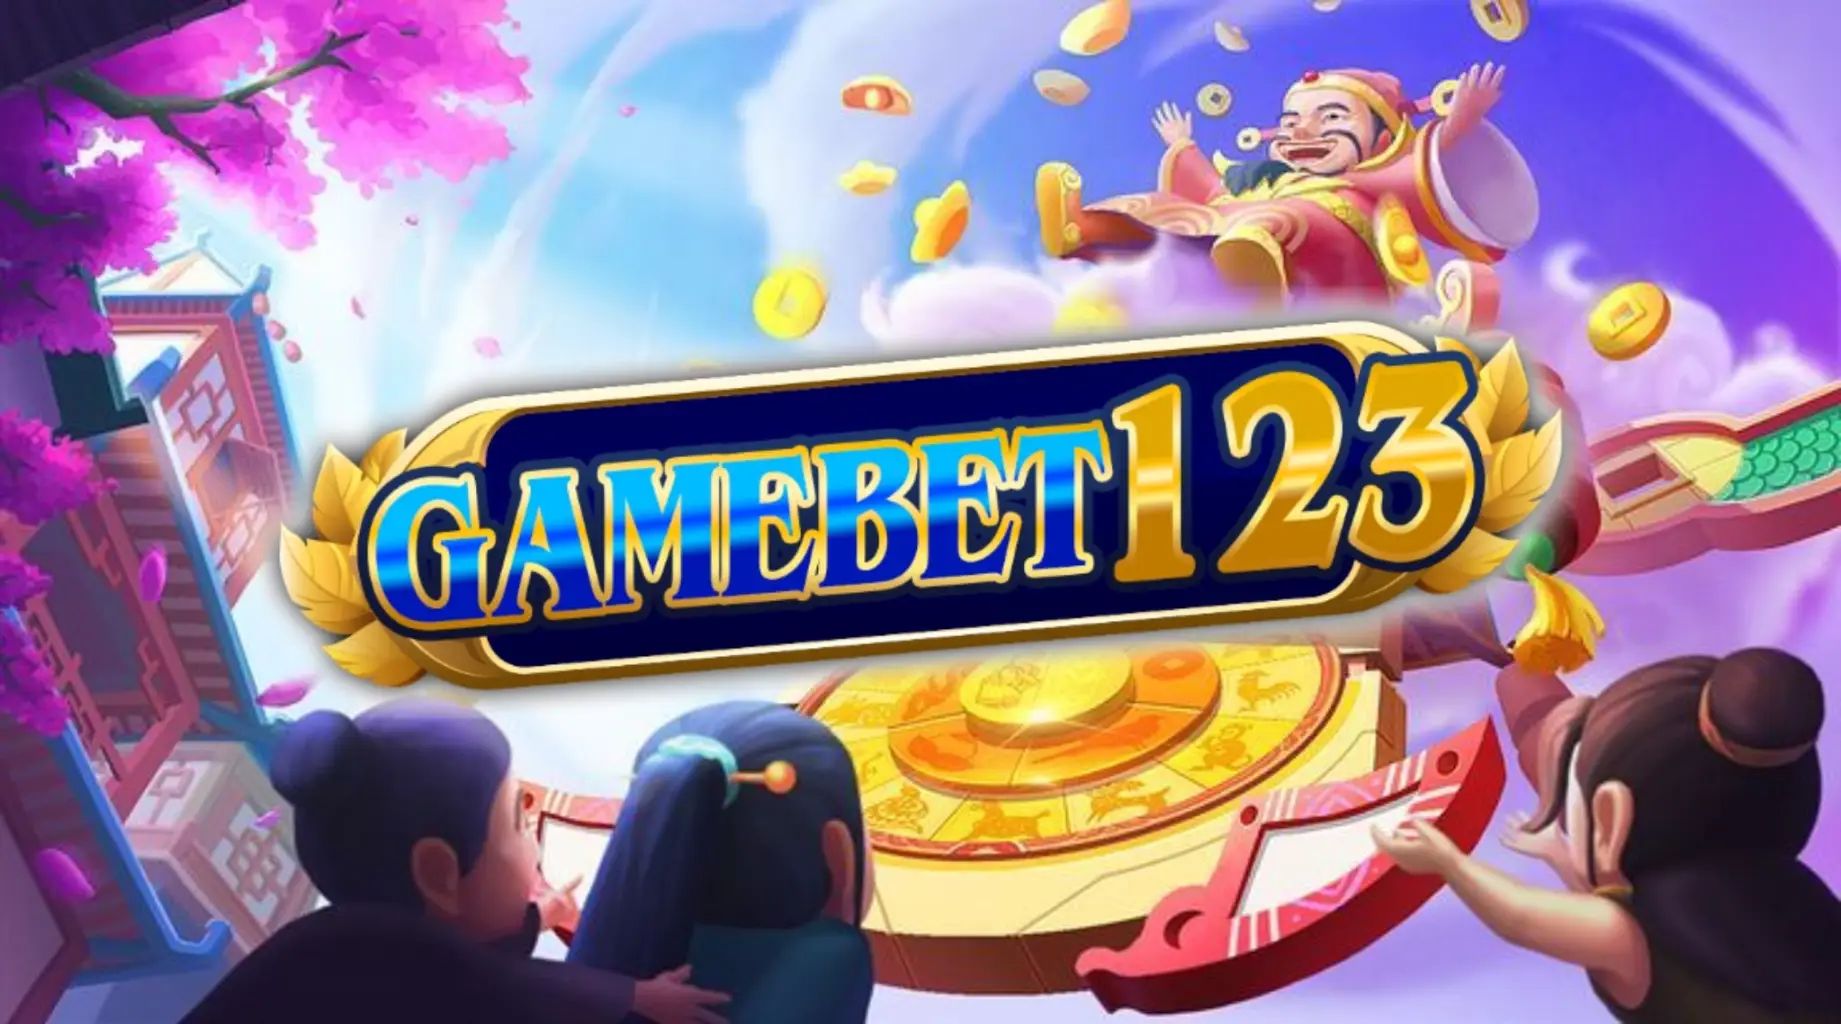 เข้าร่วมสนุกกับเกมสล็อตที่ยอดเยี่ยมกับ gamebet123 ตอนนี้!